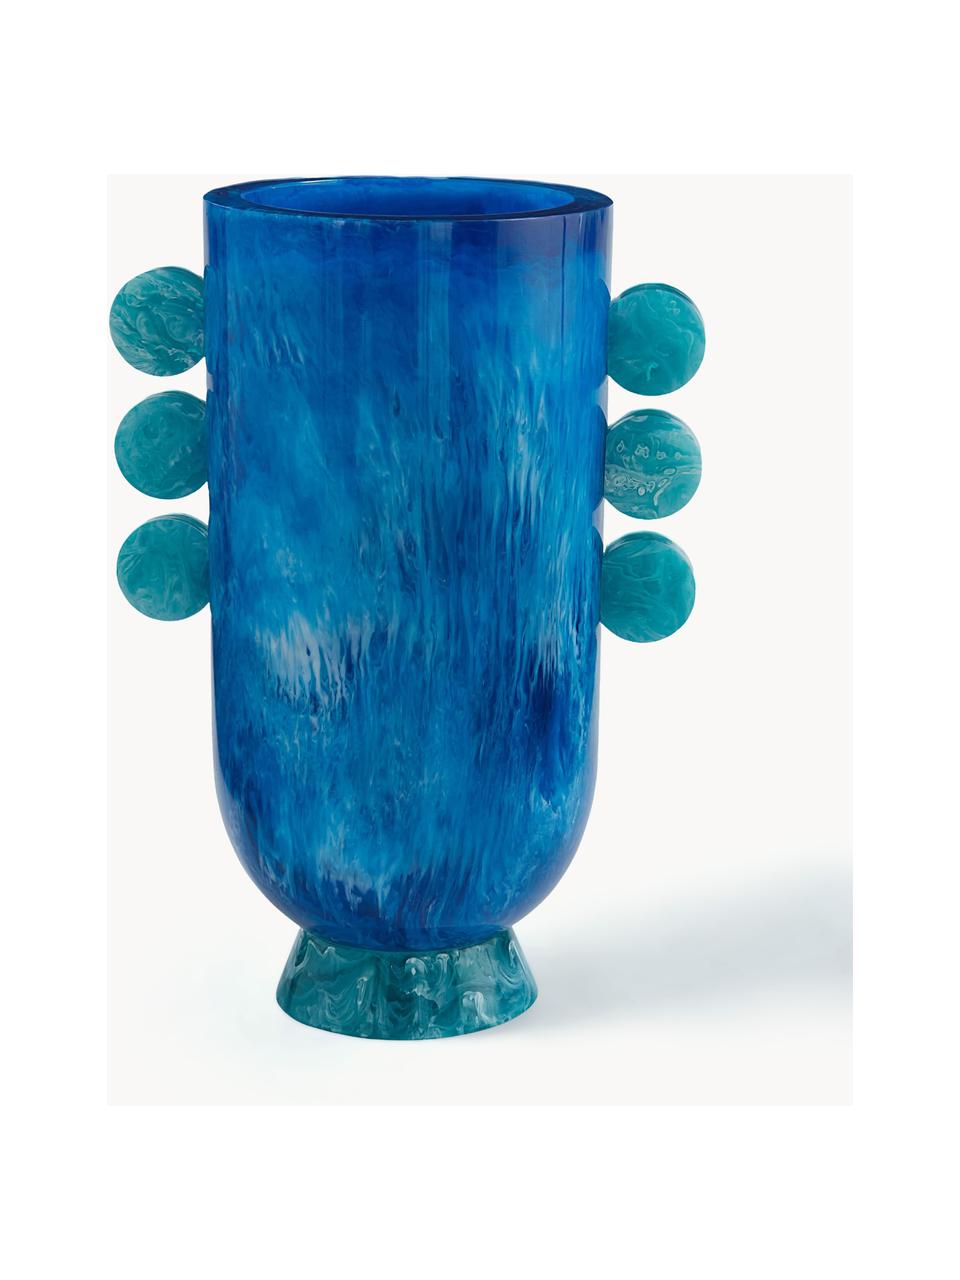 Ručně vyrobená váza v mramorovém vzhledu Mustique, V 27 cm, Akryl, leštěný, Mramorový vzhled, odstíny modré, Š 19 cm, V 27 cm